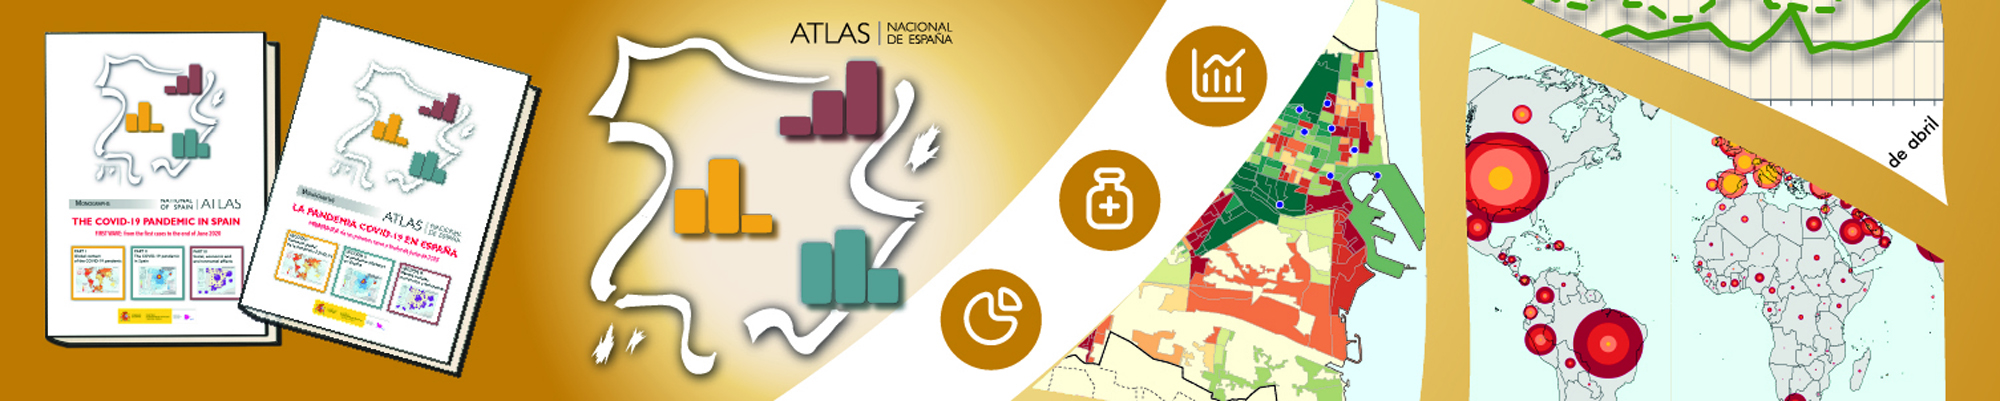 Acceso al portal del Atlas Nacional de España en español